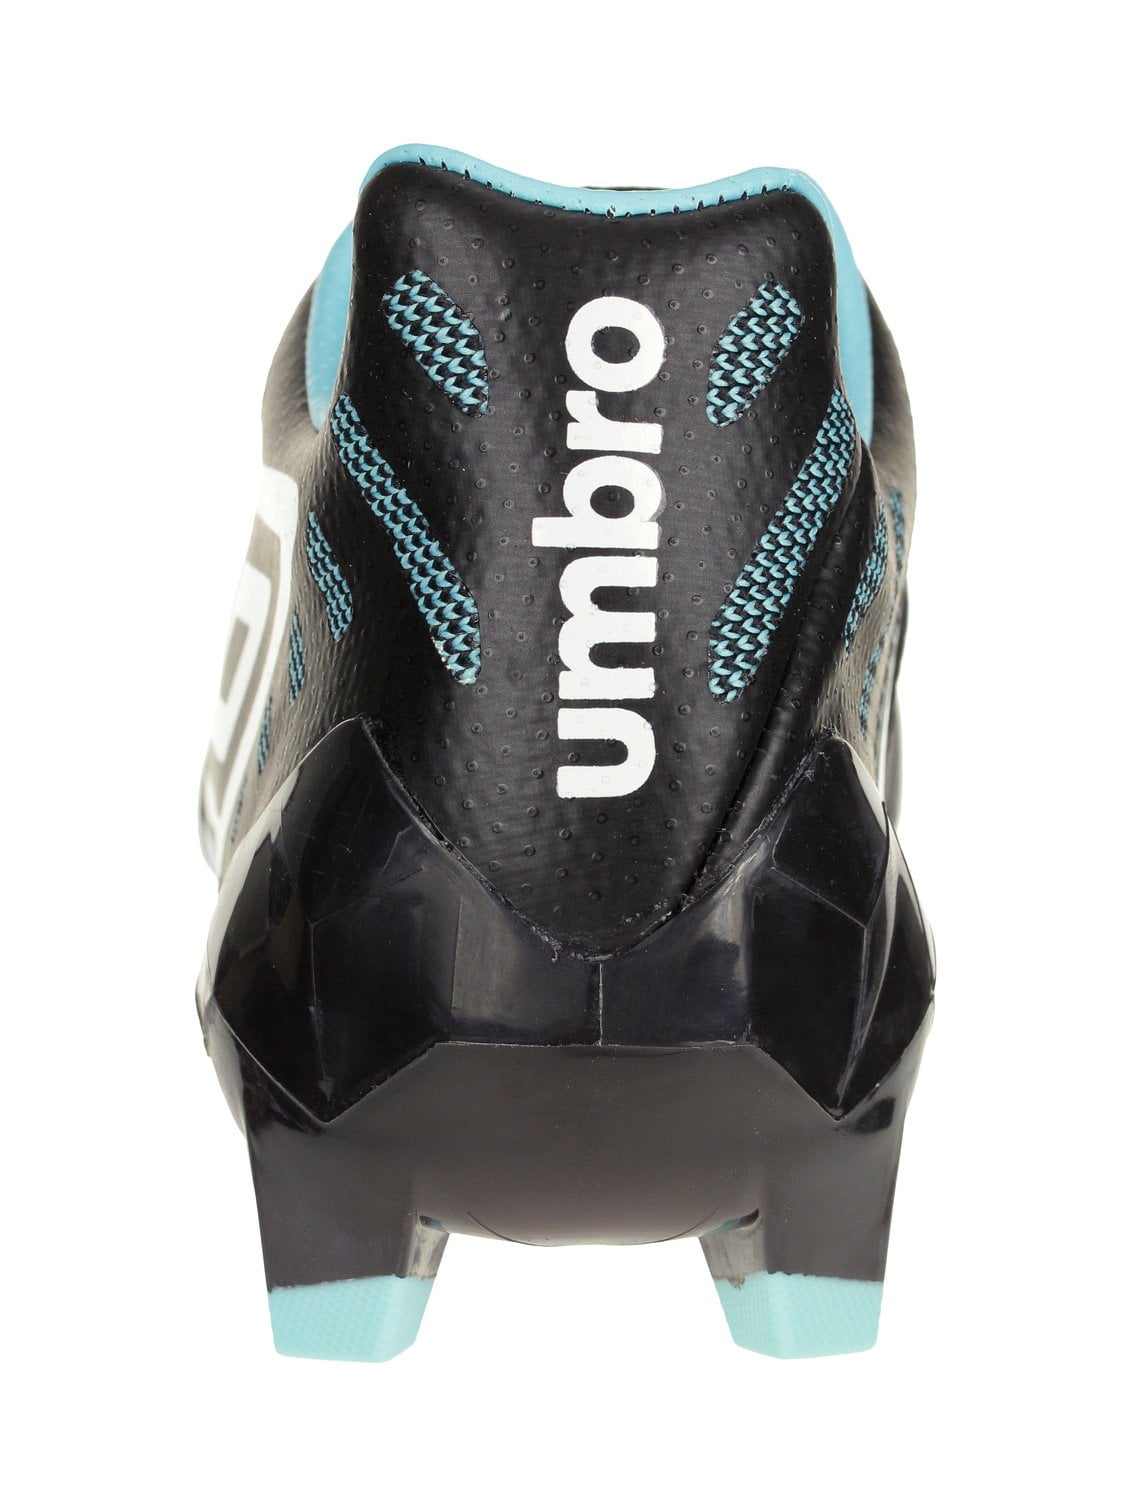 Umbro Men's Medusae II Pro Firm Ground Soccer Shoes white 8.5 10 12 $200 